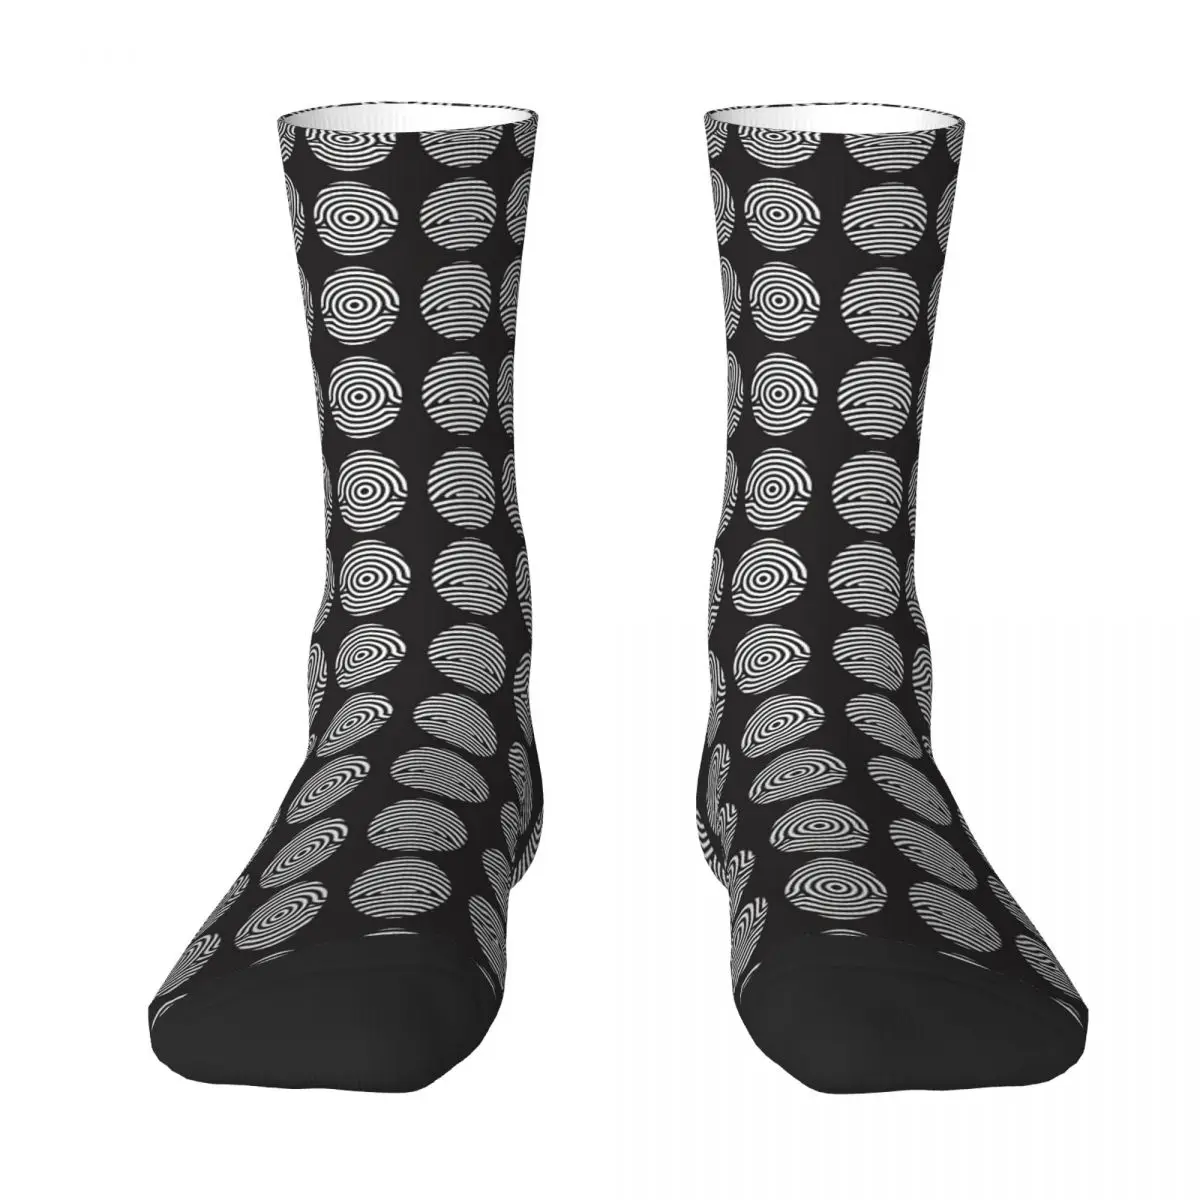 Black And White Fingerprint Adult Socks Unisex socks,men Socks women Socks